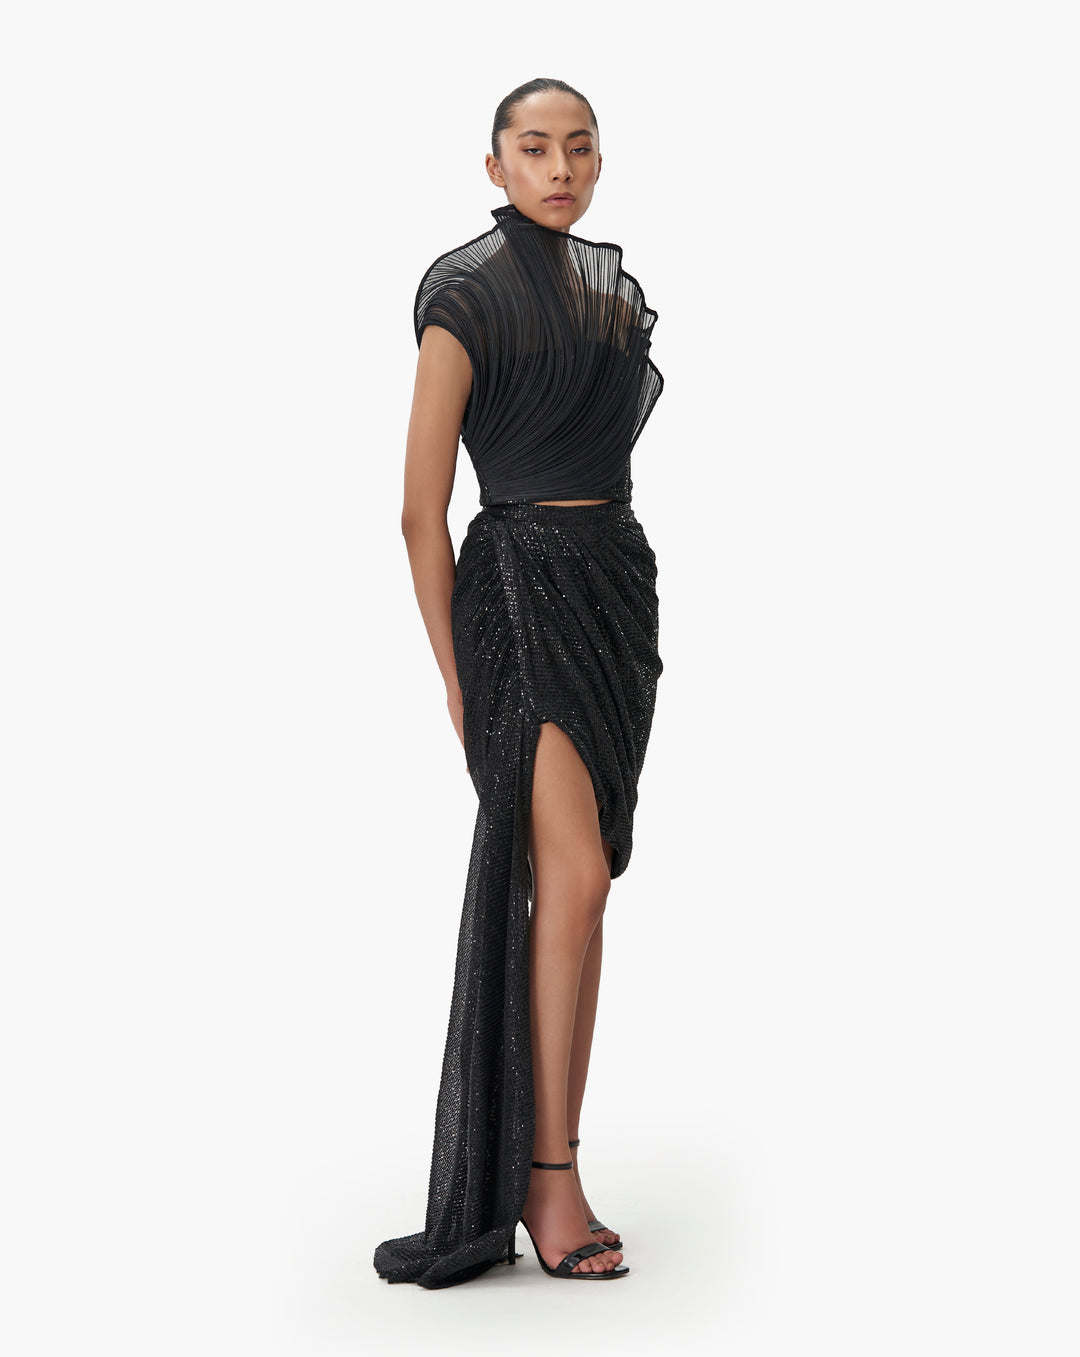 The Mini Black Sequin Draped Skirt